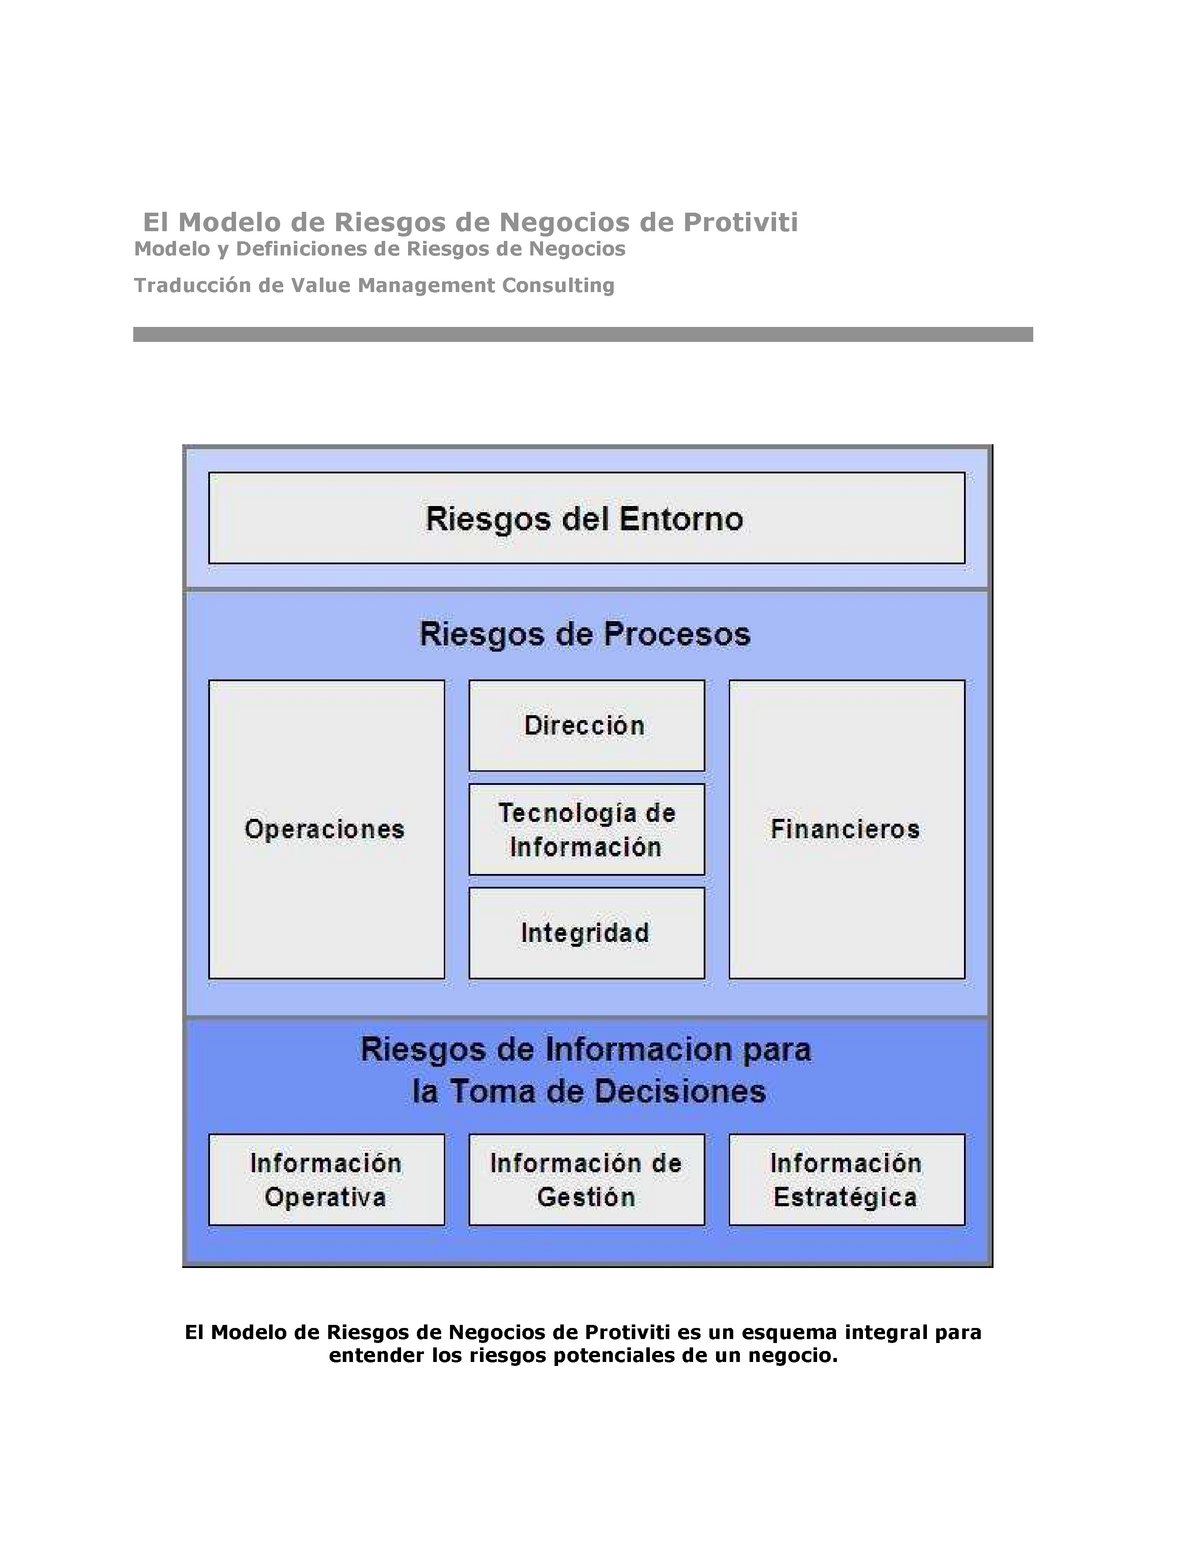 Modelo de Riesgos - Nota: 7,5 - El Modelo de Riesgos de Negocios de  Protiviti Modelo y Definiciones - Studocu